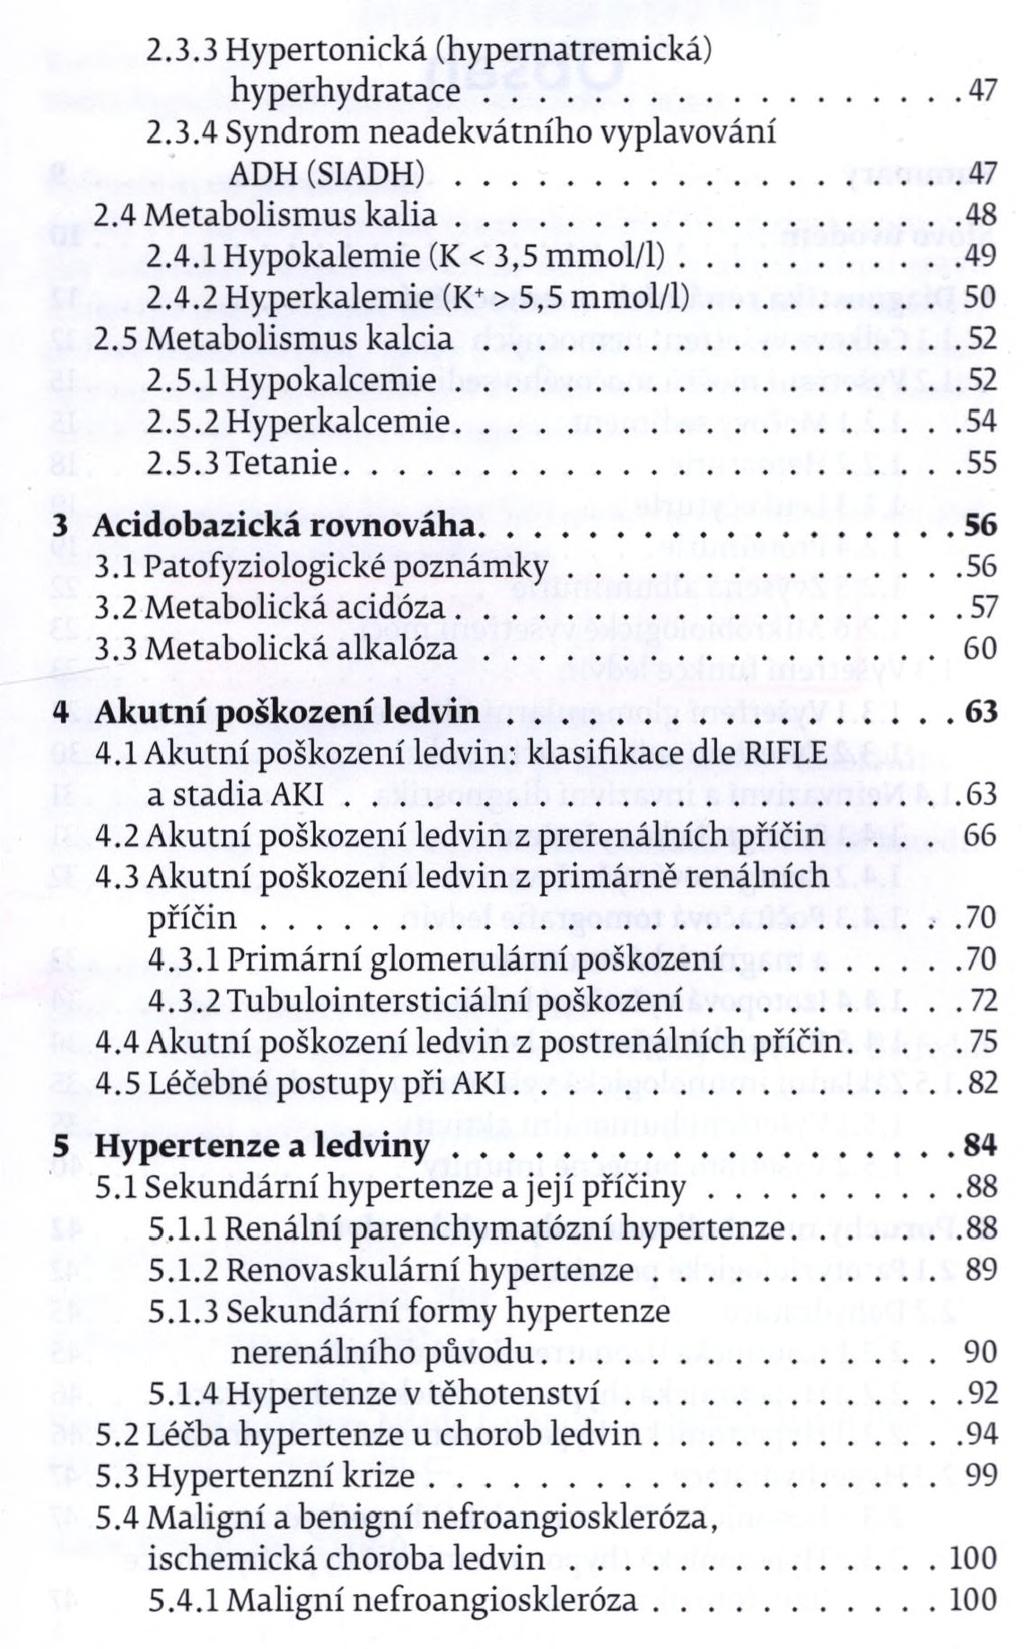 2.3.3 Hypertonická (hypernatremická) hyperhydratace... 47 2.3.4 Syndrom neadekvátního vyplavování ADH(SIADH)...47 2.4 Metabolismus k a lia... 48 2.4.1 Hypokalemie (K < 3,5 mmol/1)...49 2.4.2 Hyperkalemie (K+> 5,5 mmol/1).